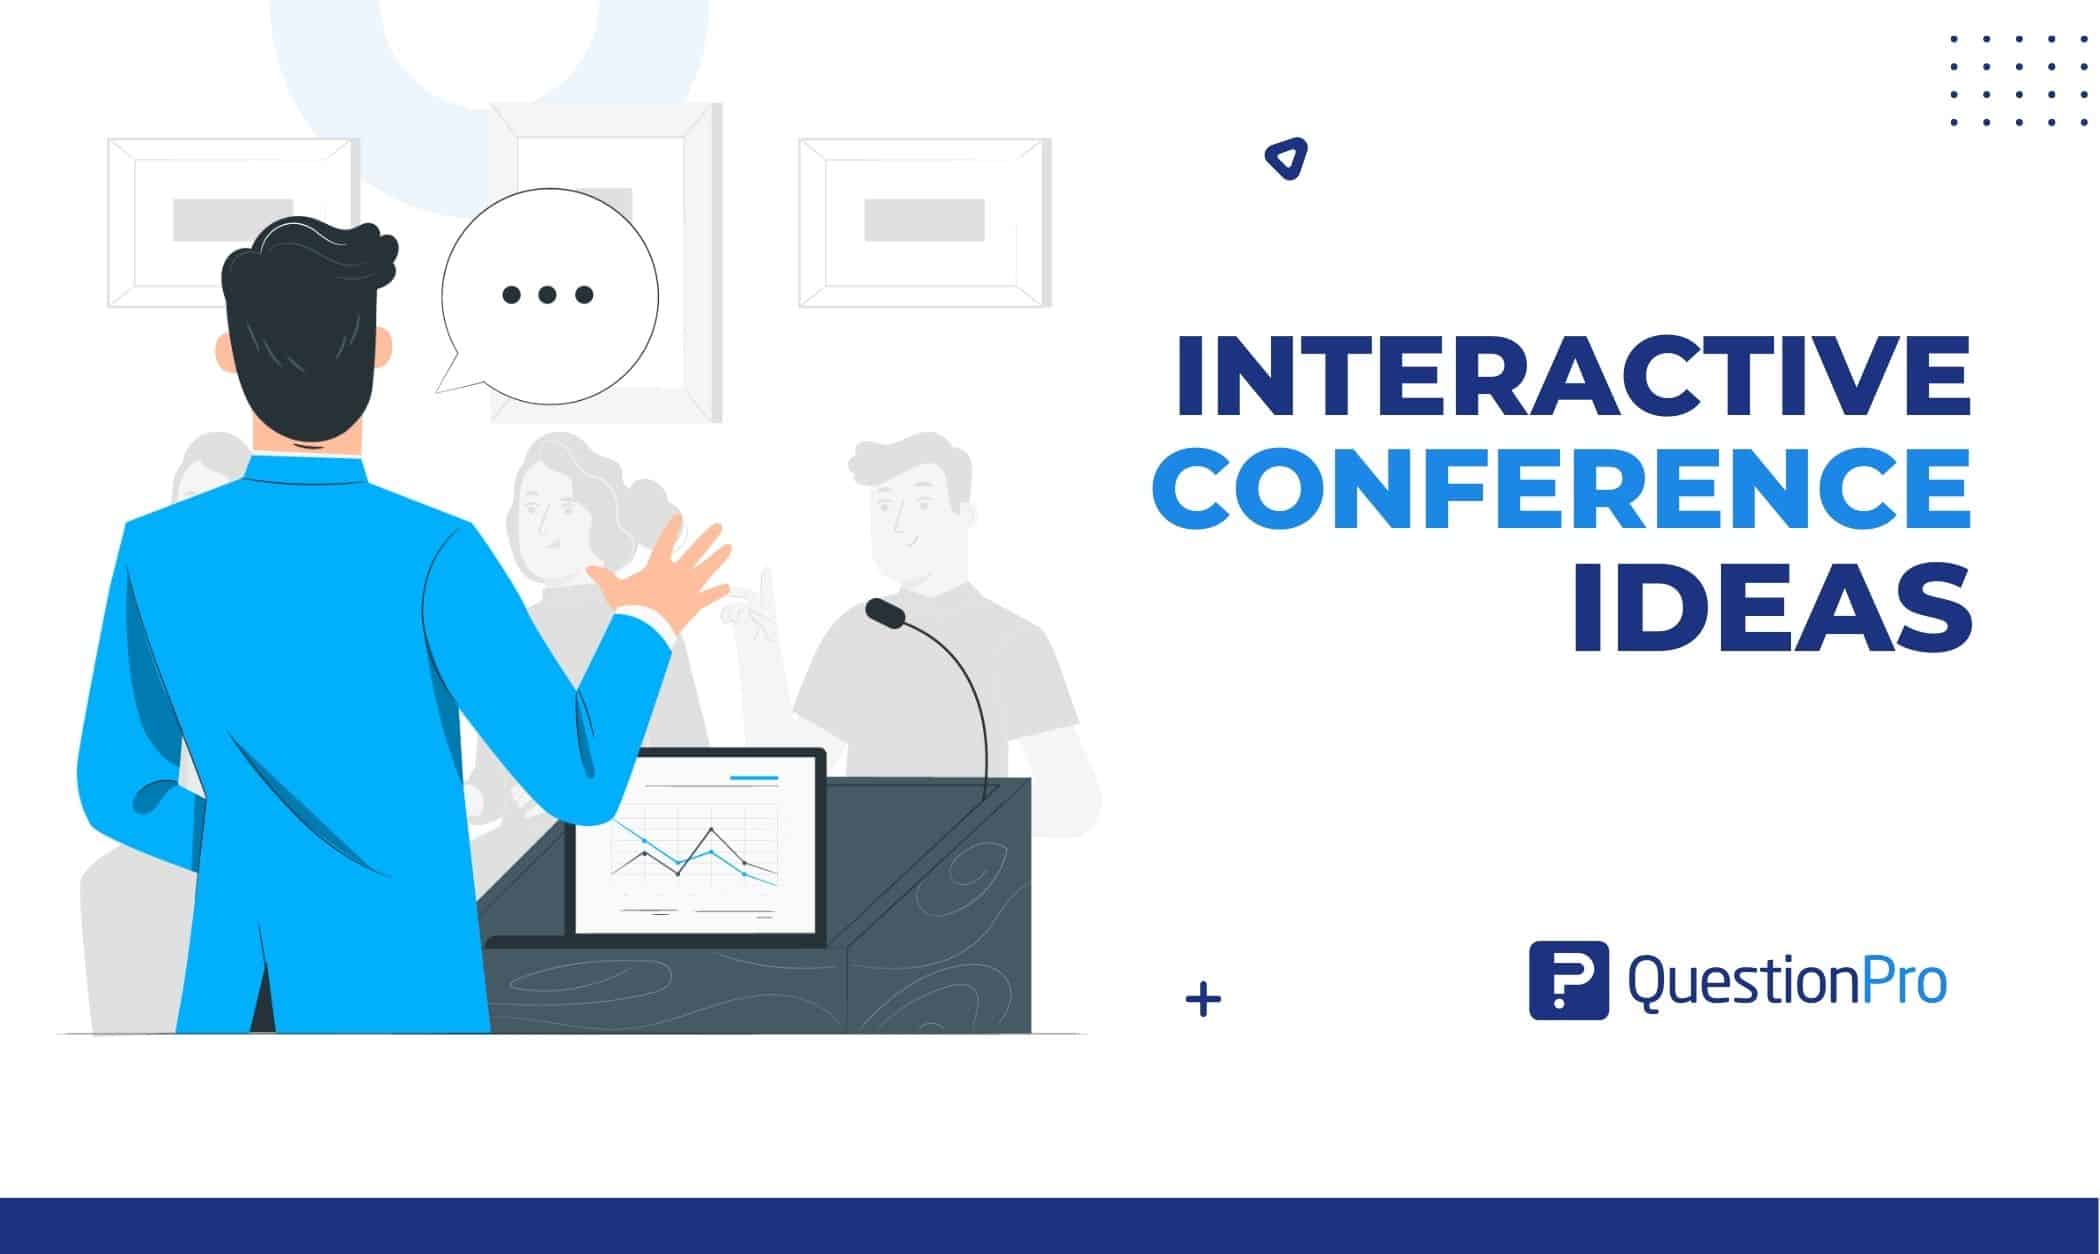 10 interactieve conferentie-ideeën om de betrokkenheid van het publiek te vergroten